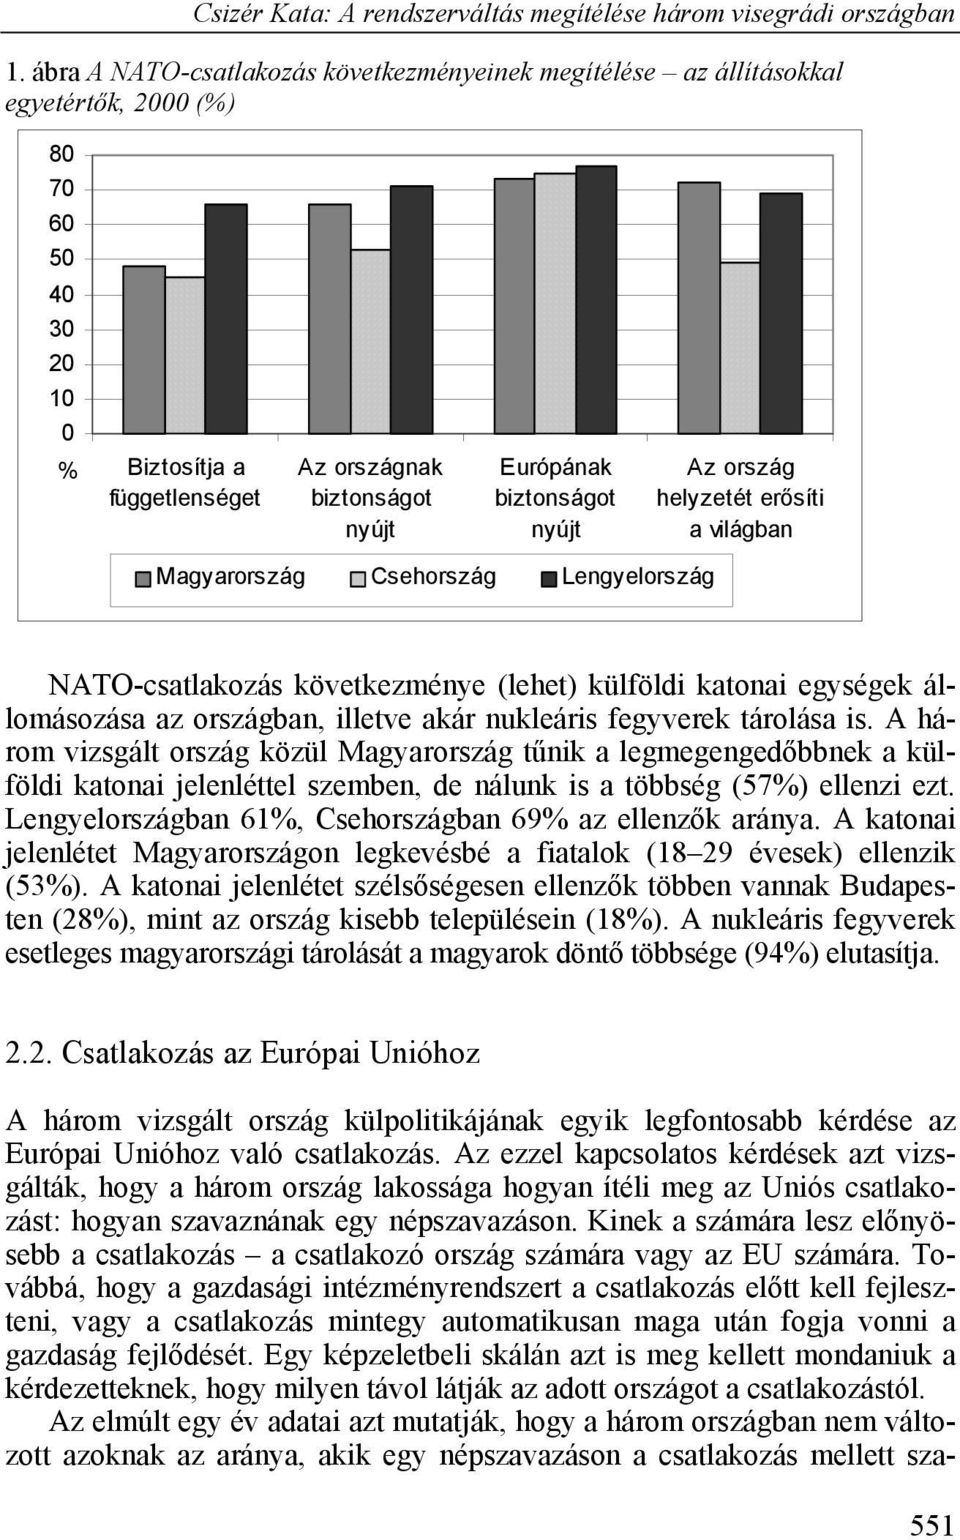 nukleáris fegyverek tárolása is. A három vizsgált ország közül Magyarország tűnik a legmegengedőbbnek a külföldi katonai jelenléttel szemben, de nálunk is a többség (57%) ellenzi ezt.